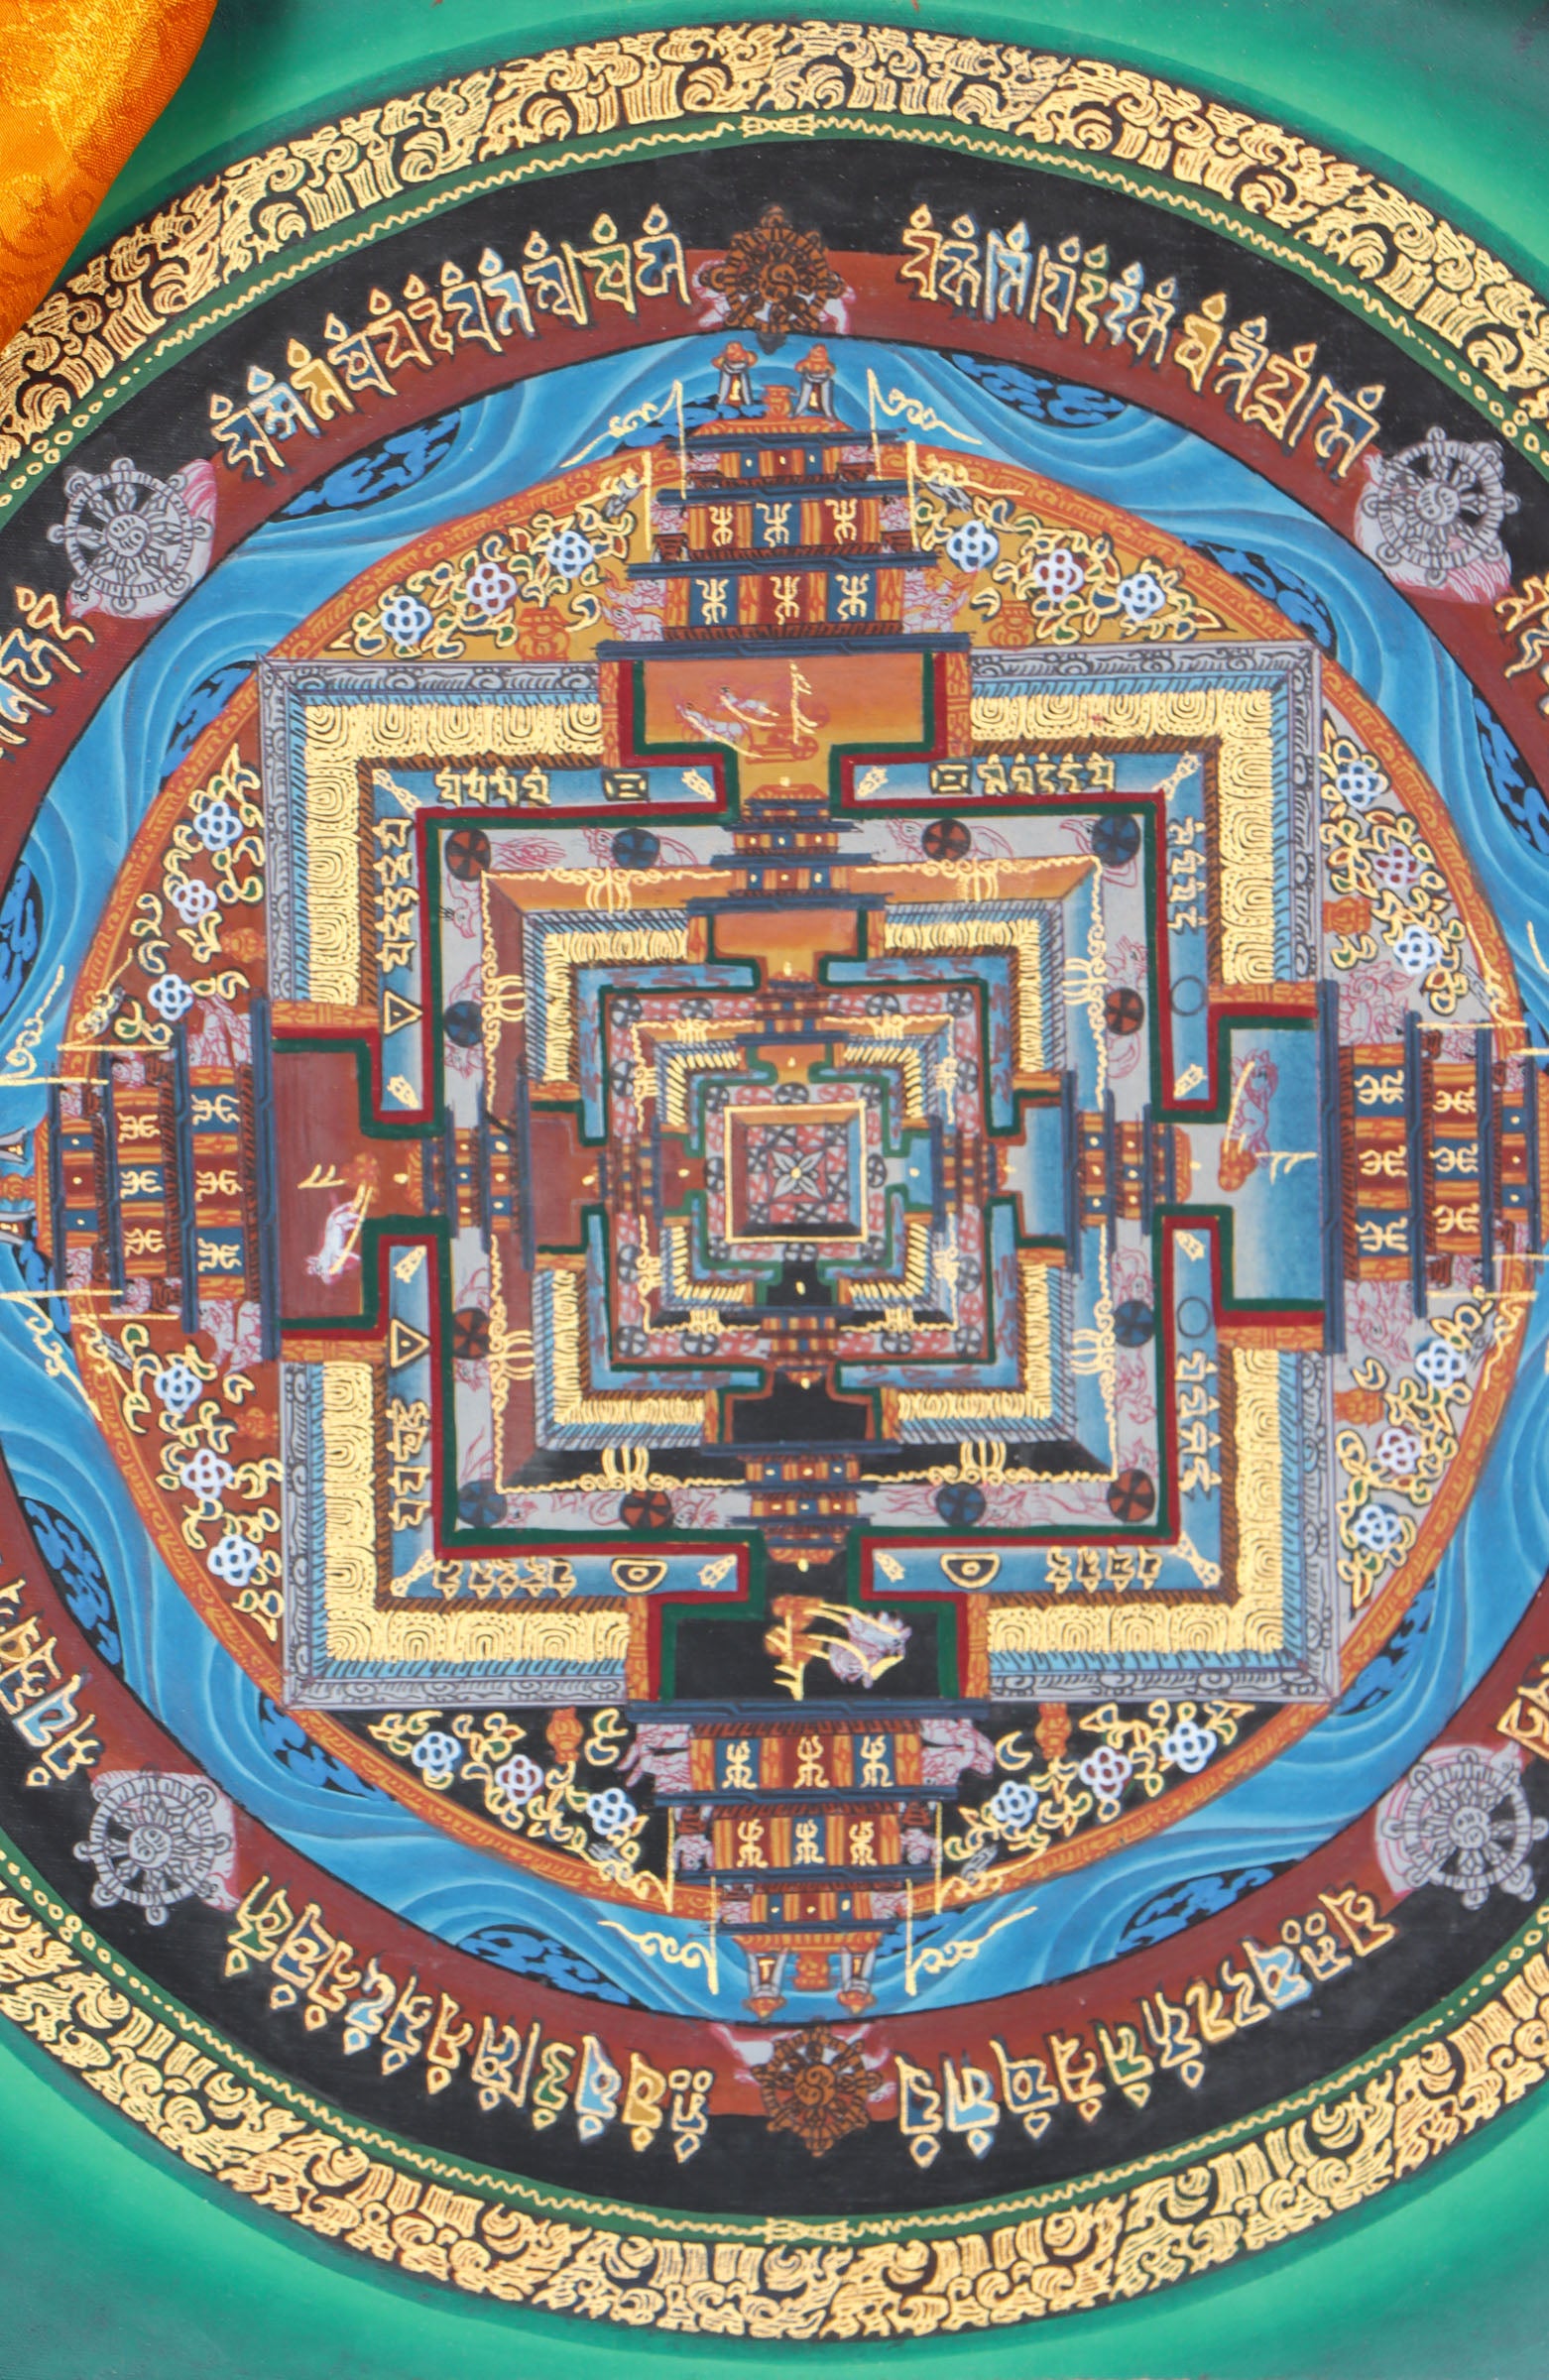 Kalachakra Mandala Brocade Thangka Painting for meditation and contemplation.